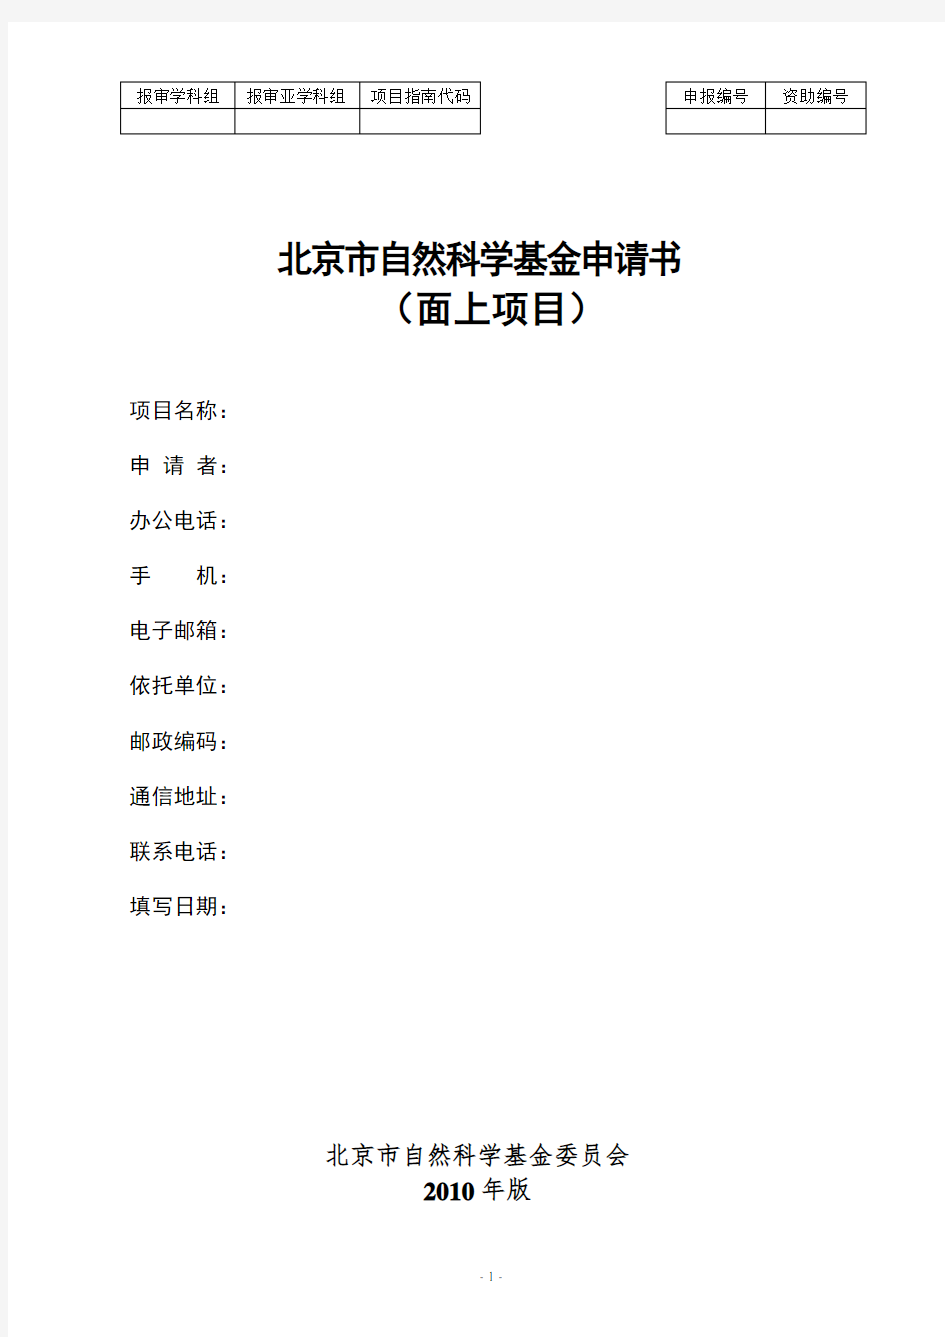 北京市自然科学基金申请书模板(面上项目)